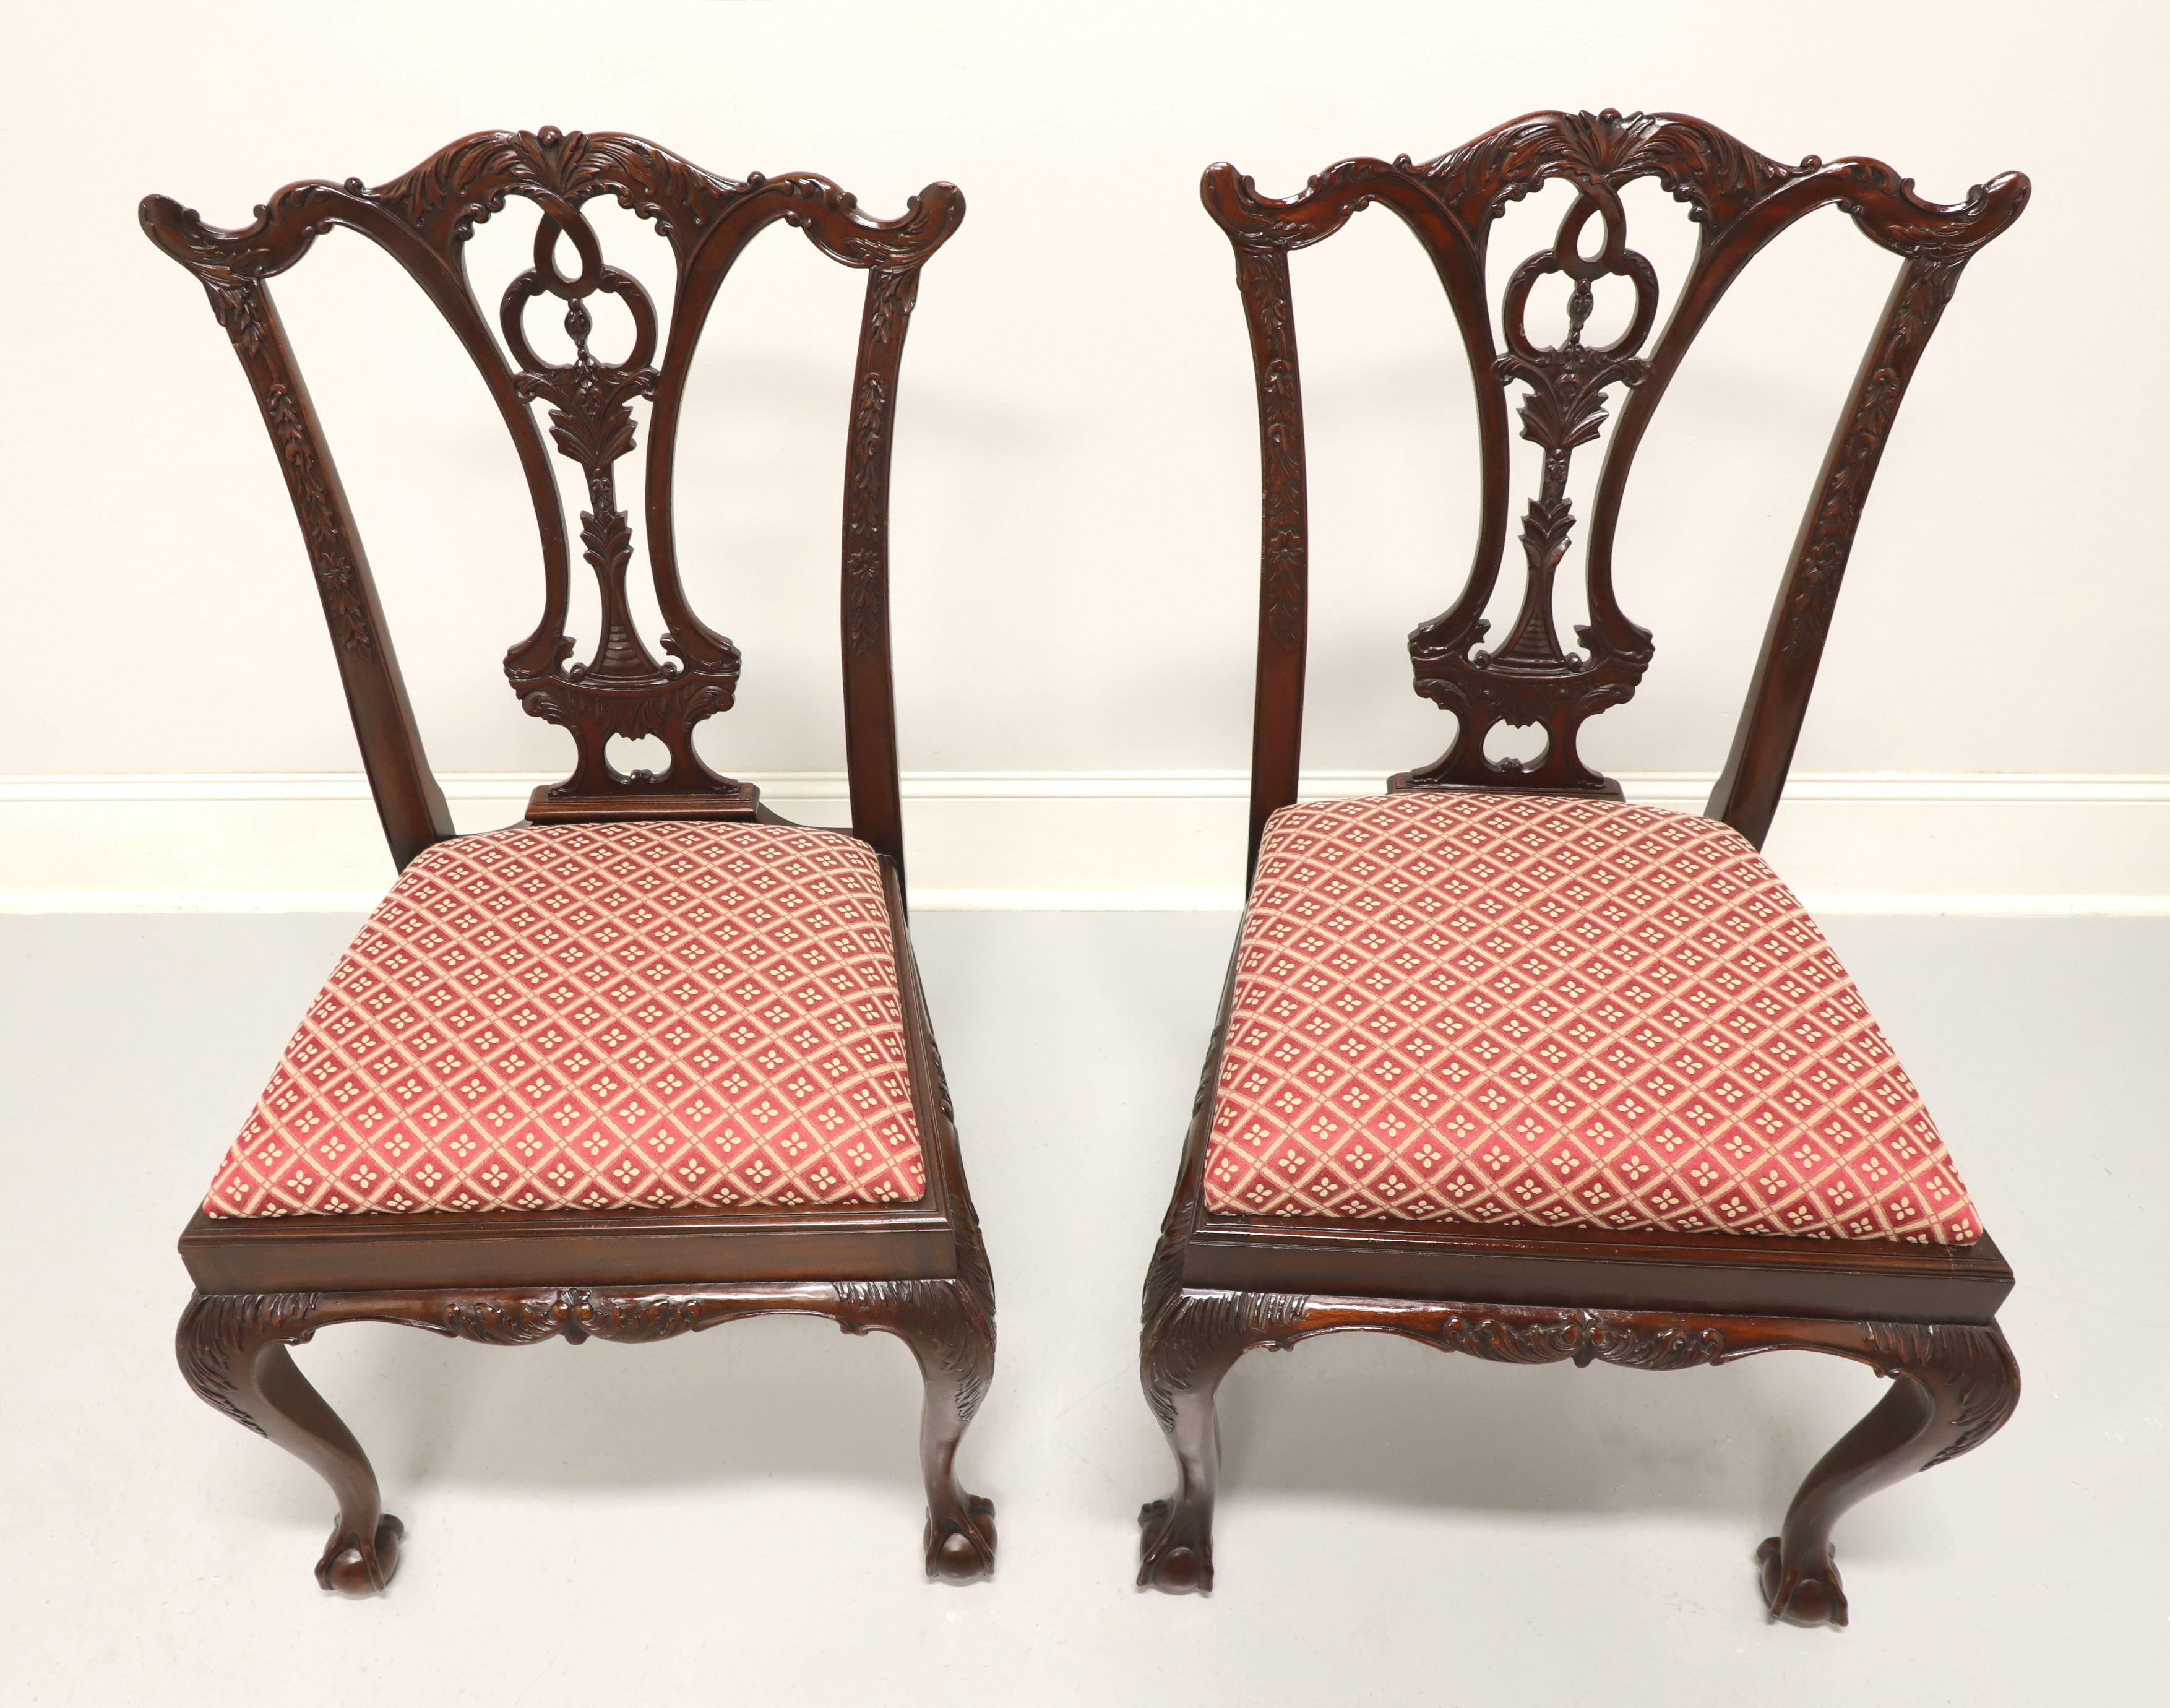 Une paire de chaises latérales de style Chippendale par Maitland Smith. En acajou massif, avec des rails de crête sculptés, des dossiers hautement sculptés, des sièges tapissés de tissu rouge et crème à motif de diamant, un tablier sculpté, une